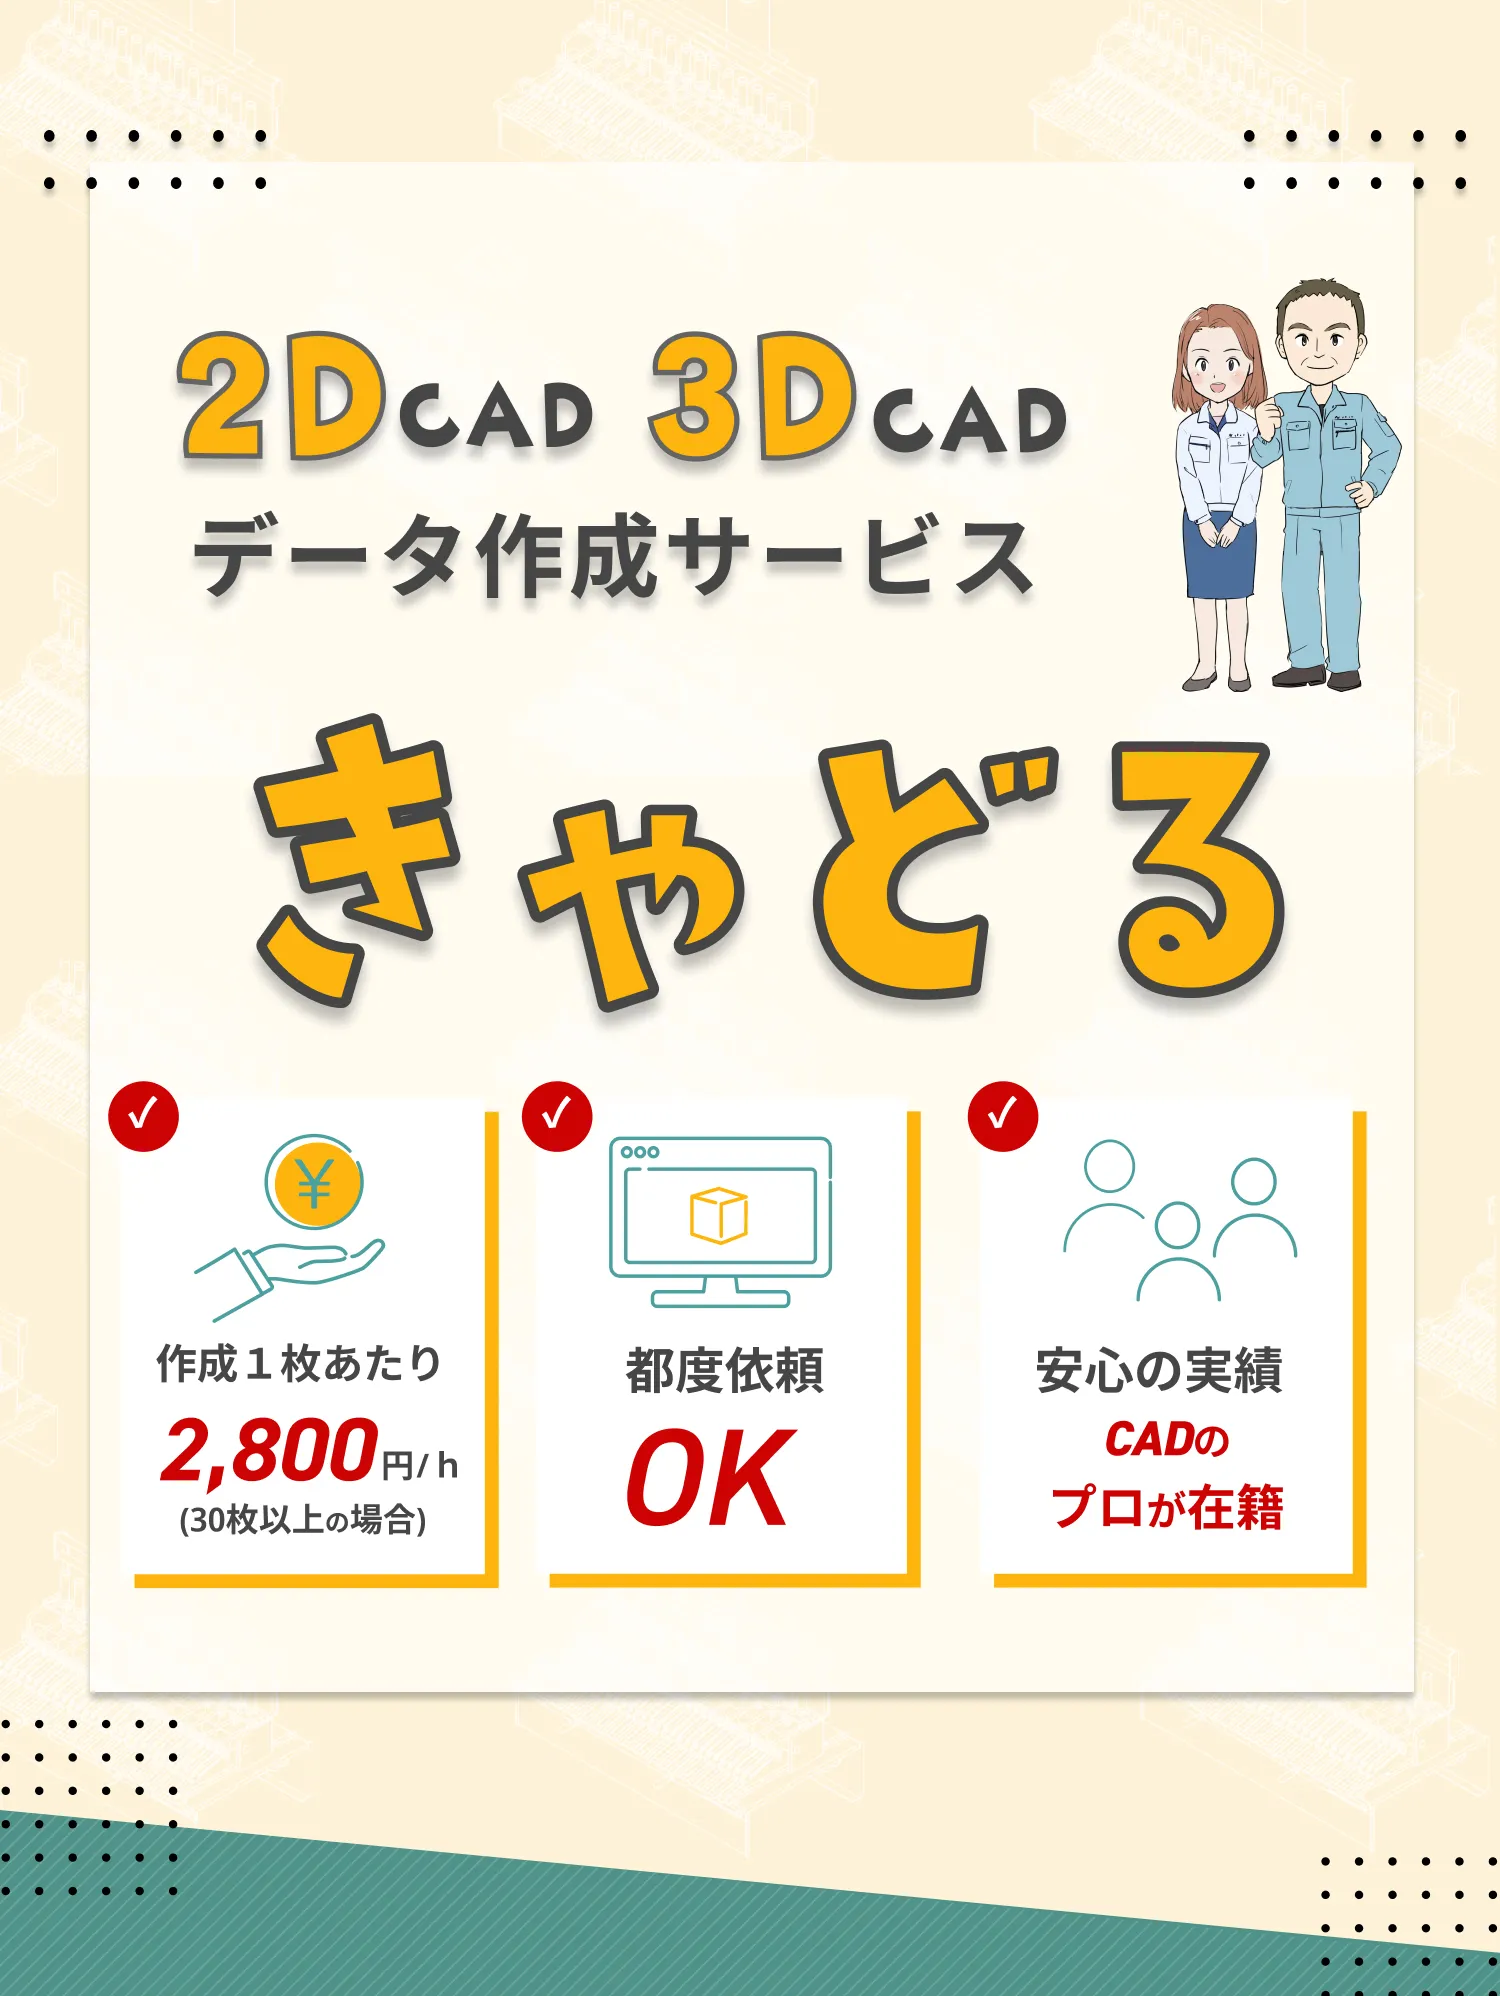 2D-cad 3d-cad 図化サービス「きゃどる」